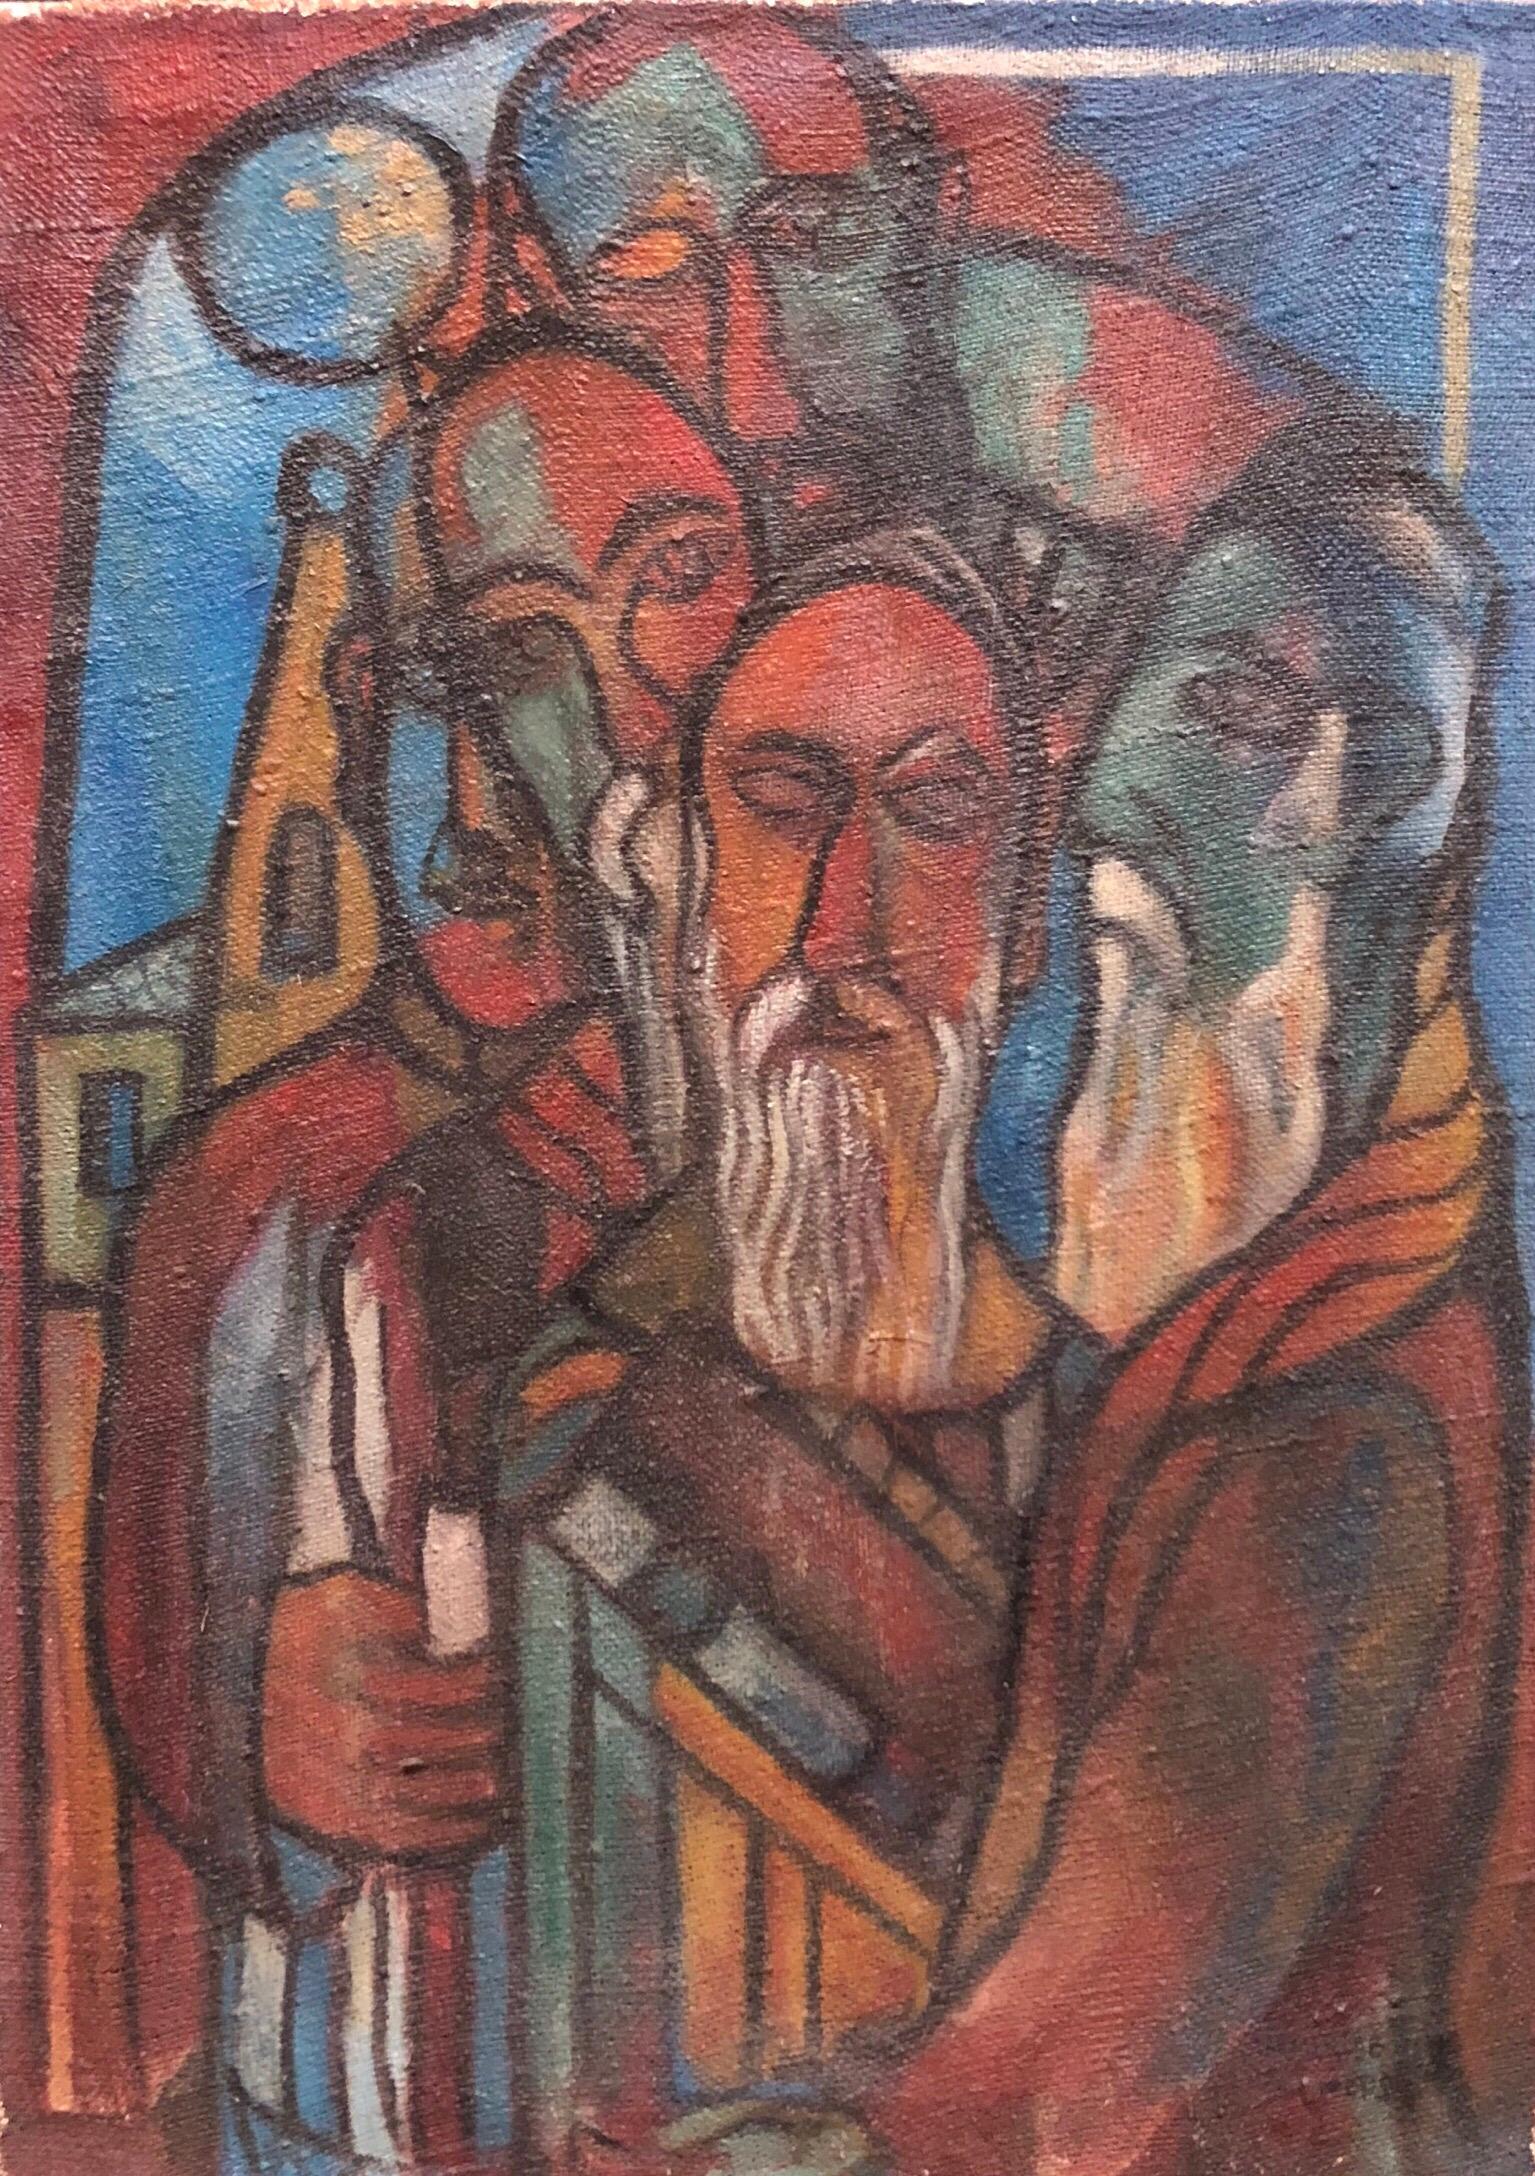 Unknown Figurative Painting – Modernistisches Judaica-Ölgemälde der Moderne, Blessing the New Moon, jüdisches Gebet, Ölgemälde 